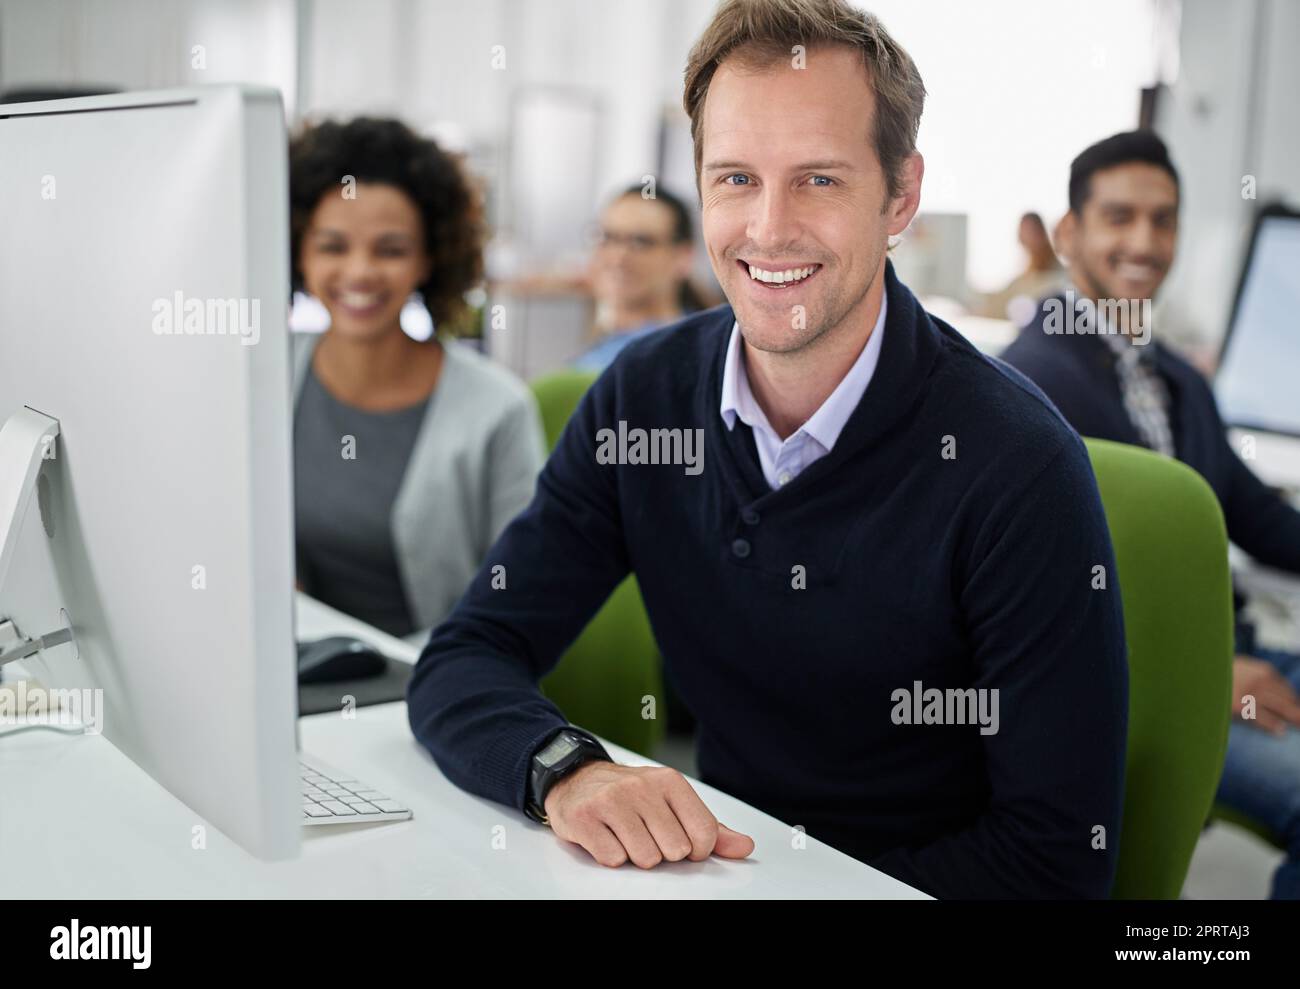 Unser Arbeitsplatz hat eine positive Einstellung. Porträt eines lächelnden Geschäftsmannes mit seinen Mitarbeitern im Hintergrund. Stockfoto